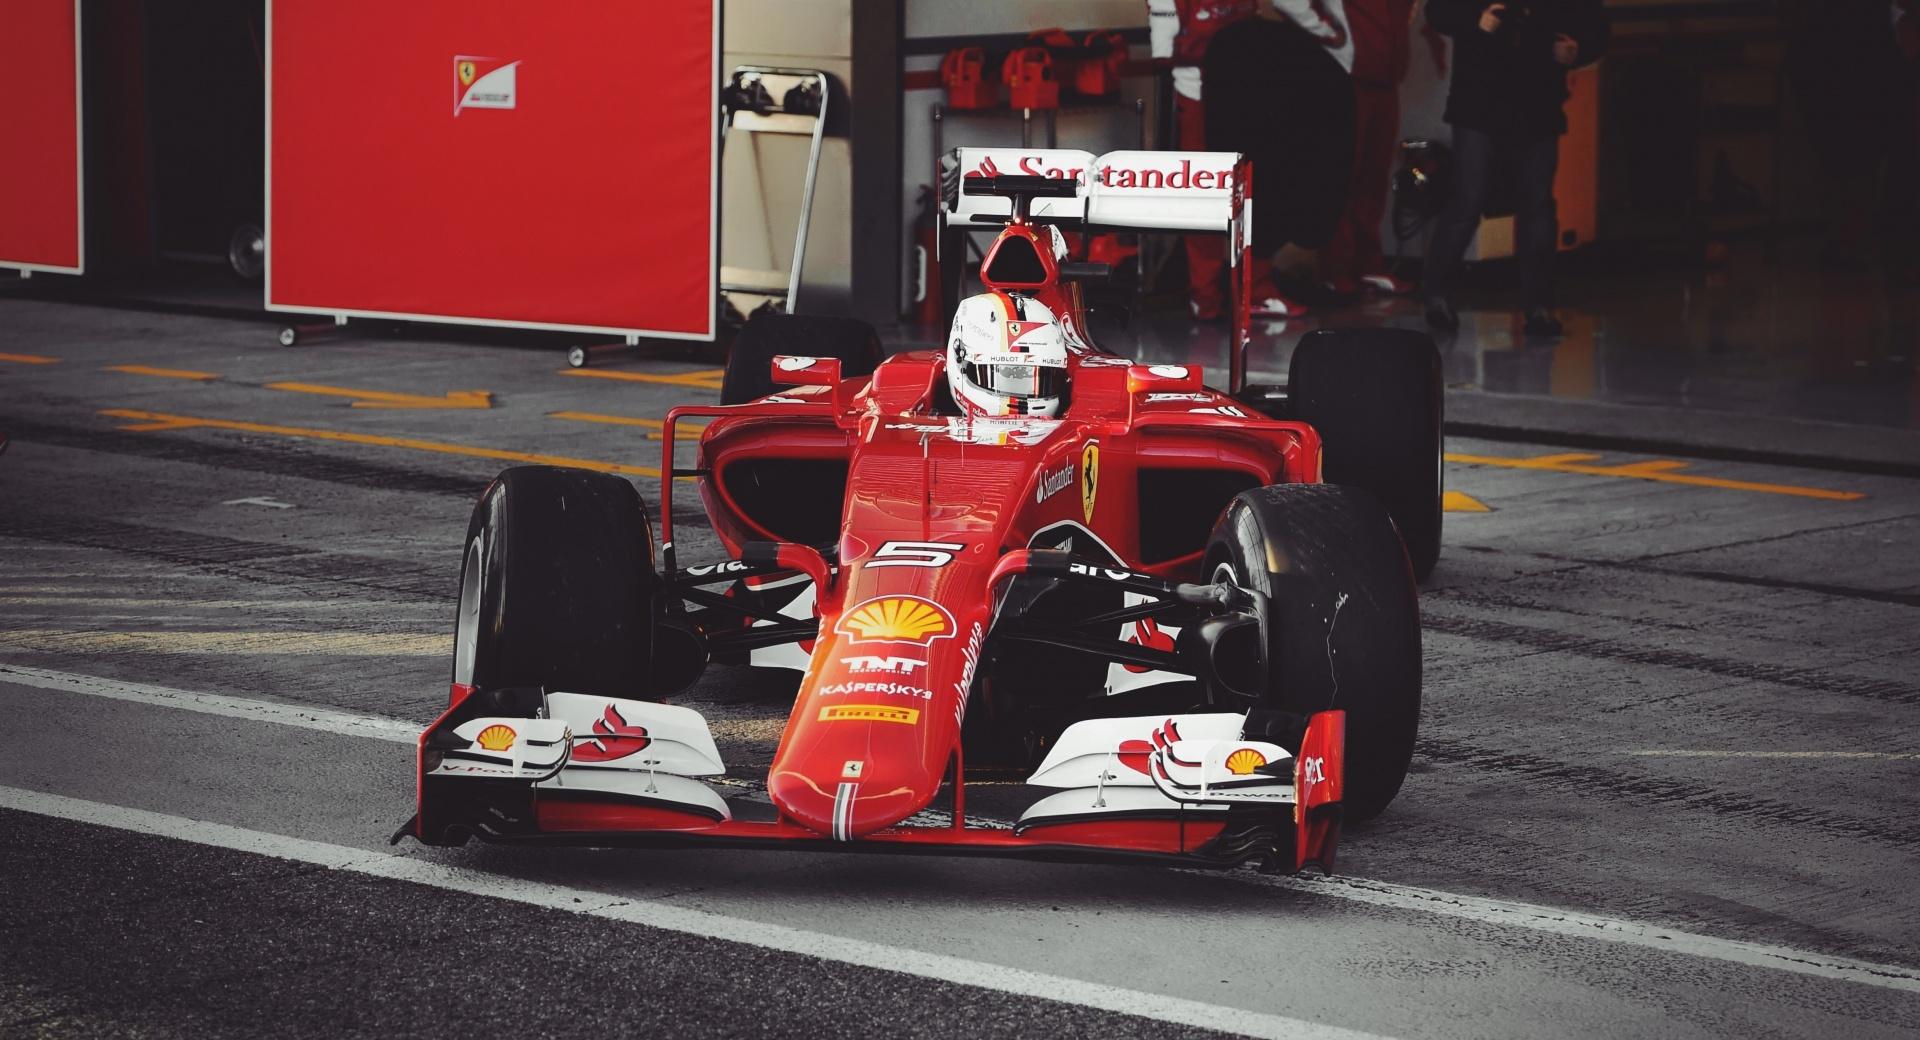 Vettel Ferrari 2015 at 1280 x 960 size wallpapers HD quality